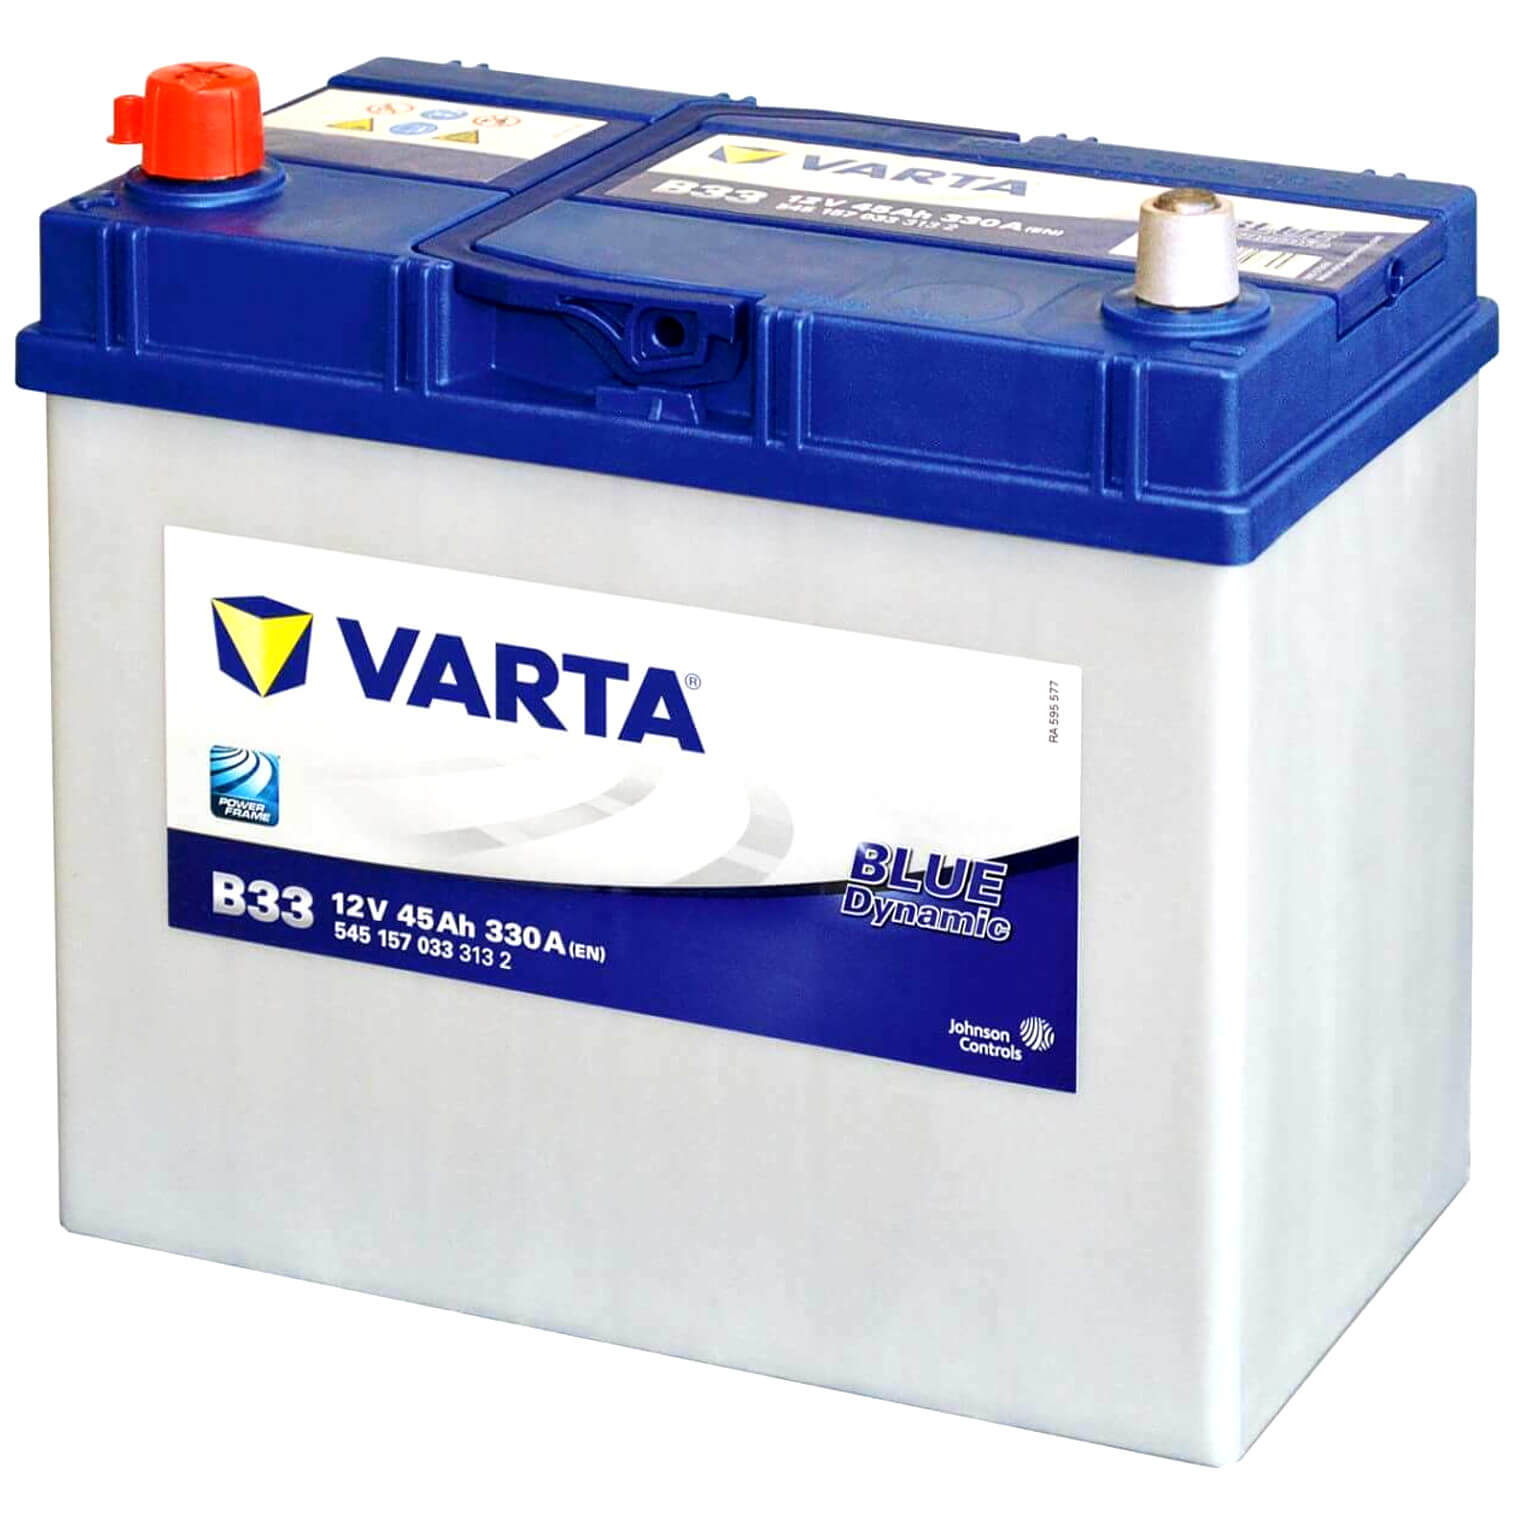 Autobatterie 12V 45Ah / 330A (EN)